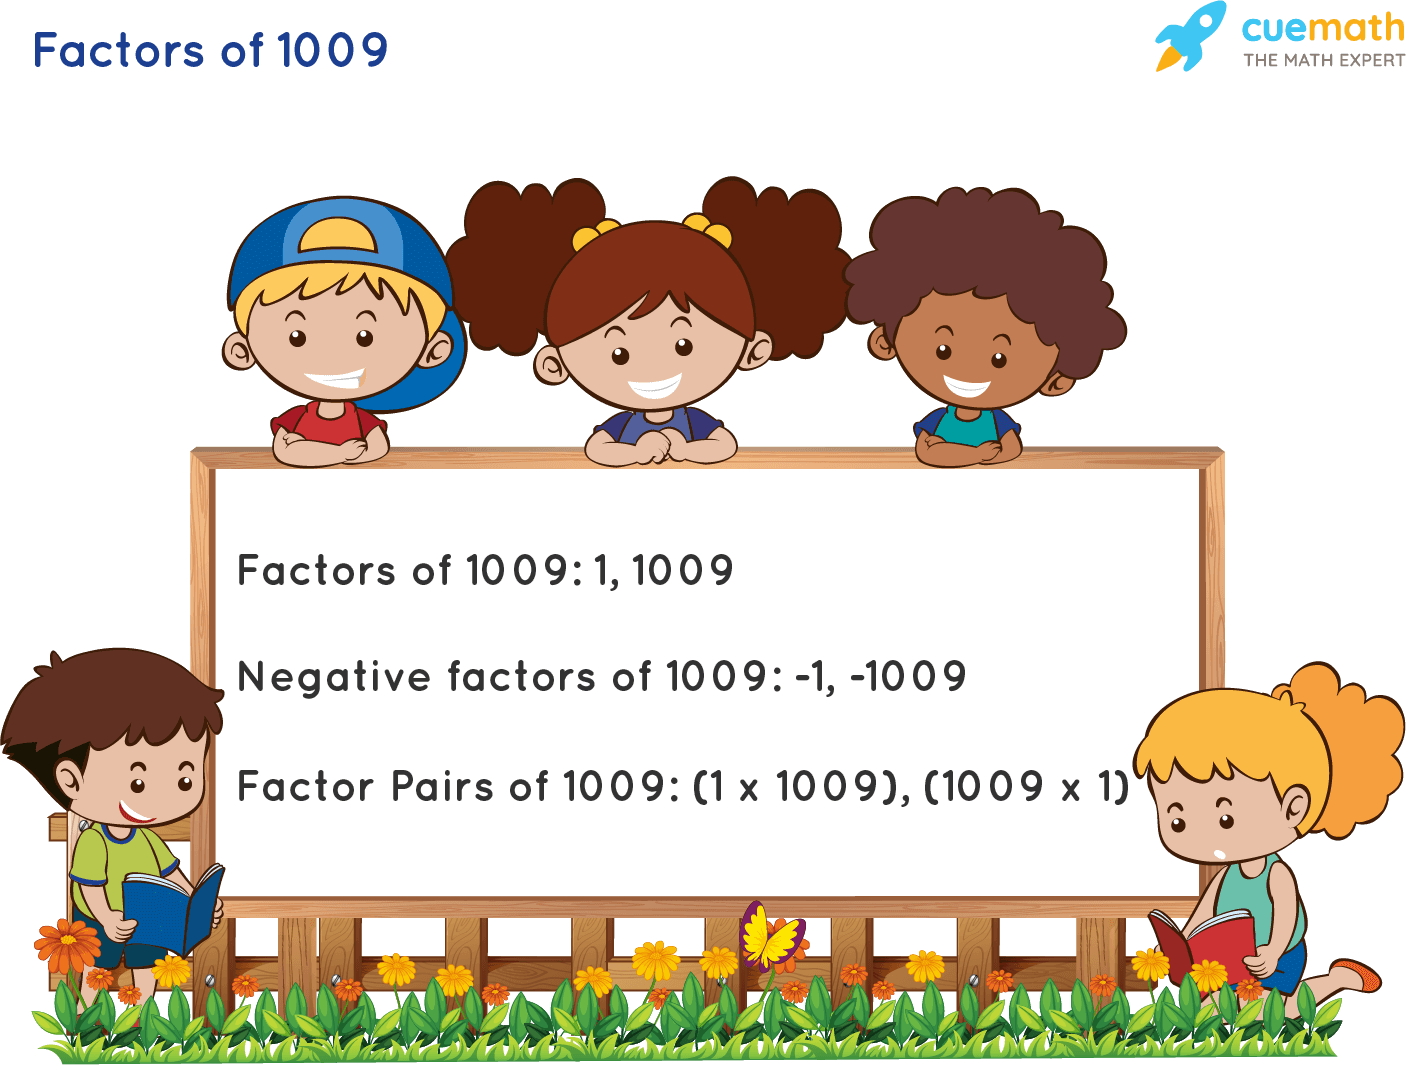 Factors of 1009